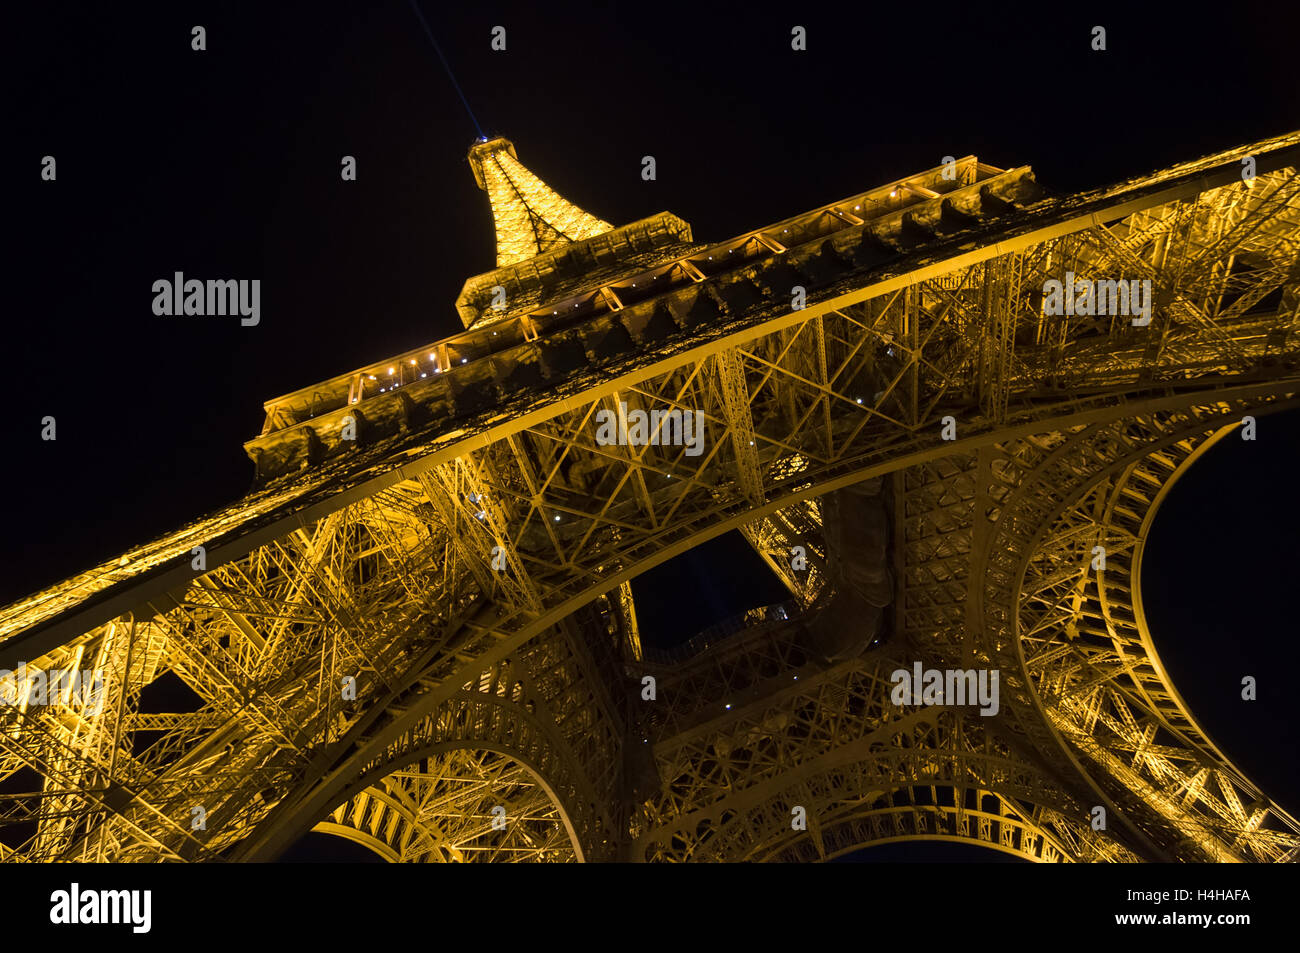 PARIS - 16 septembre 2014 : Tour Eiffel Luminosité Afficher dans le crépuscule. La Tour Eiffel est l'un des monument le plus visité. Banque D'Images